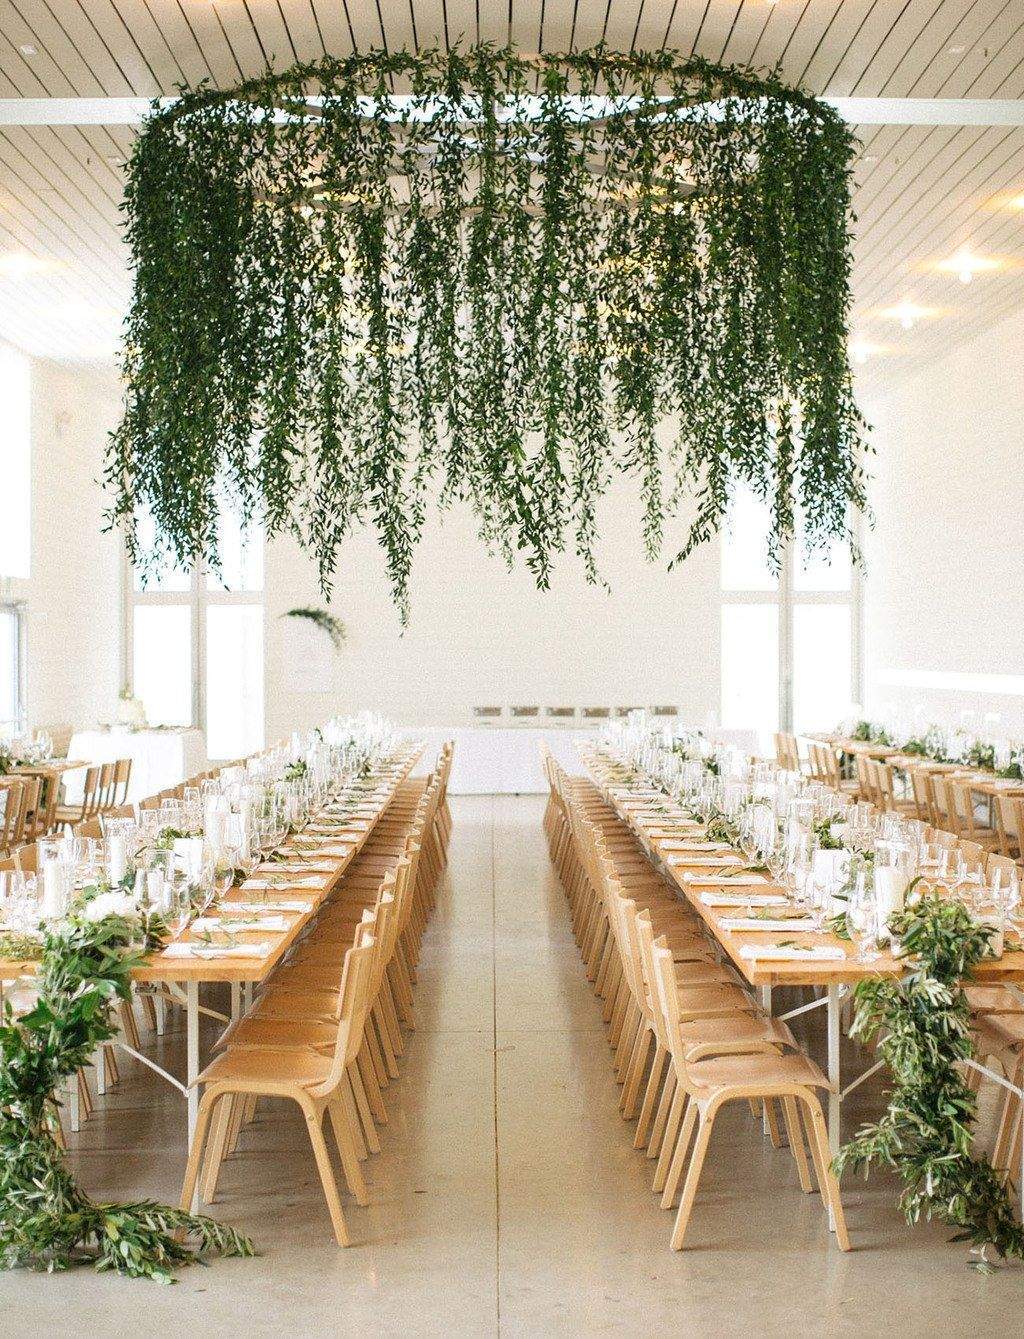 hochzeit im garten elegant 28 greenery wedding decor ideas that are fresh for spring of hochzeit im garten